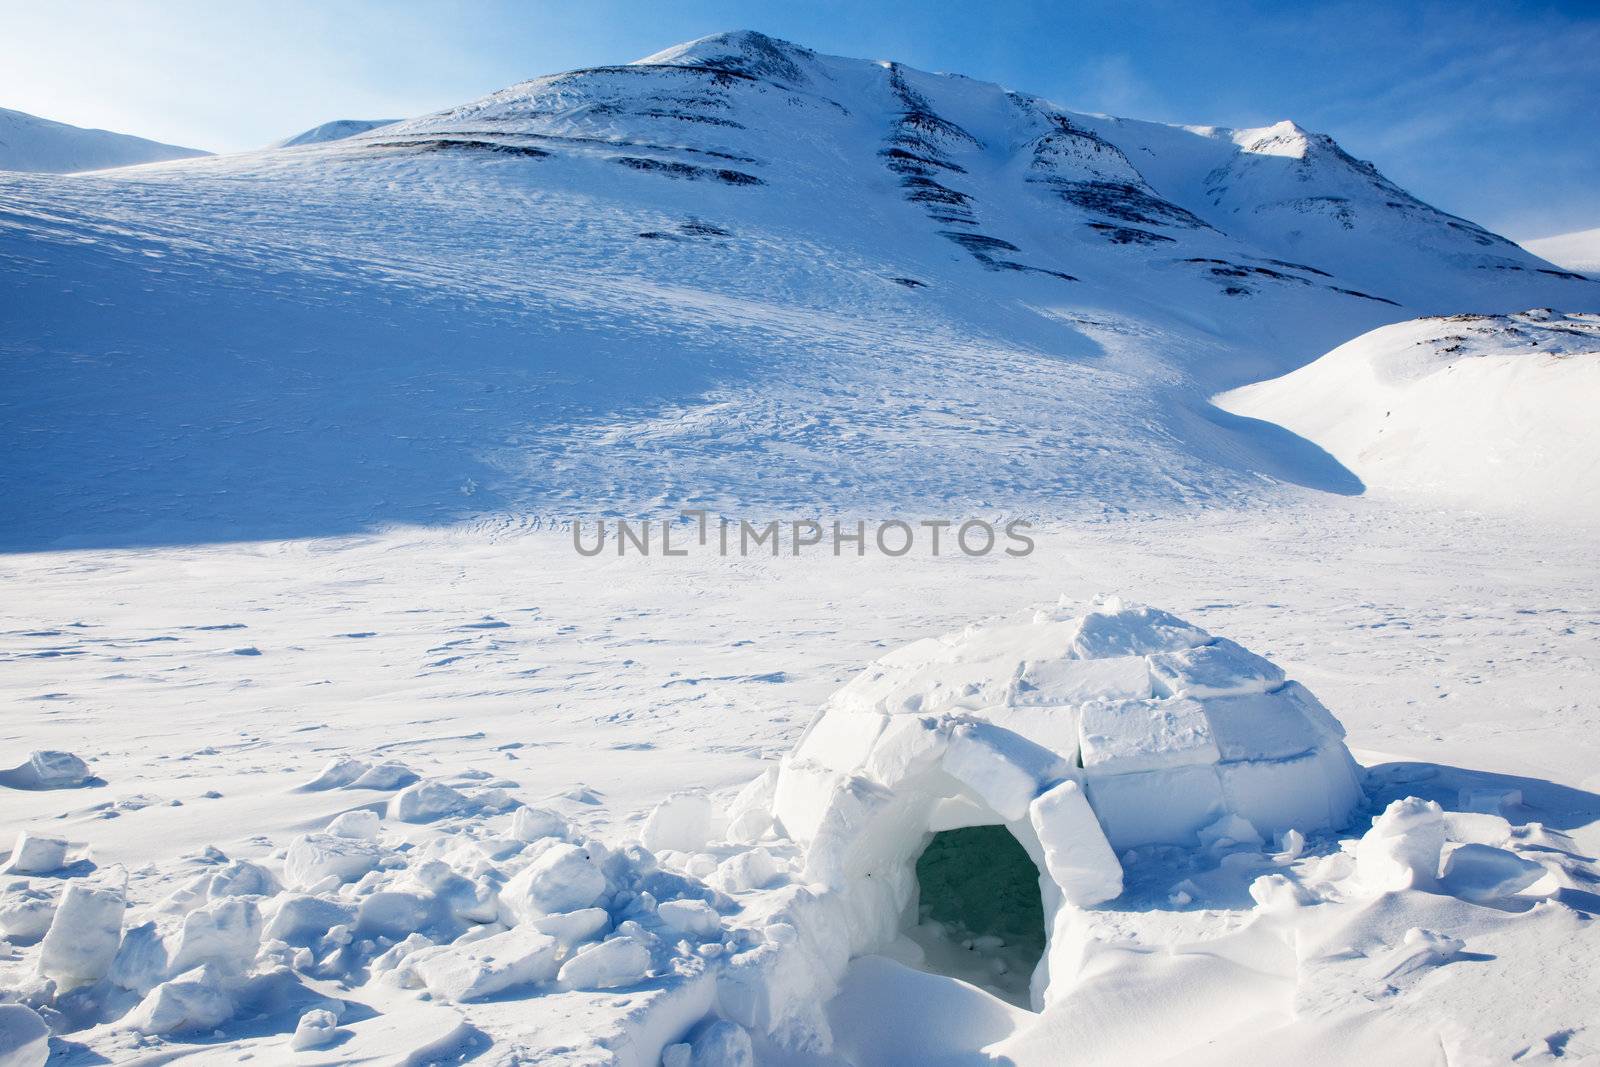 Igloo in a winter mountain setting